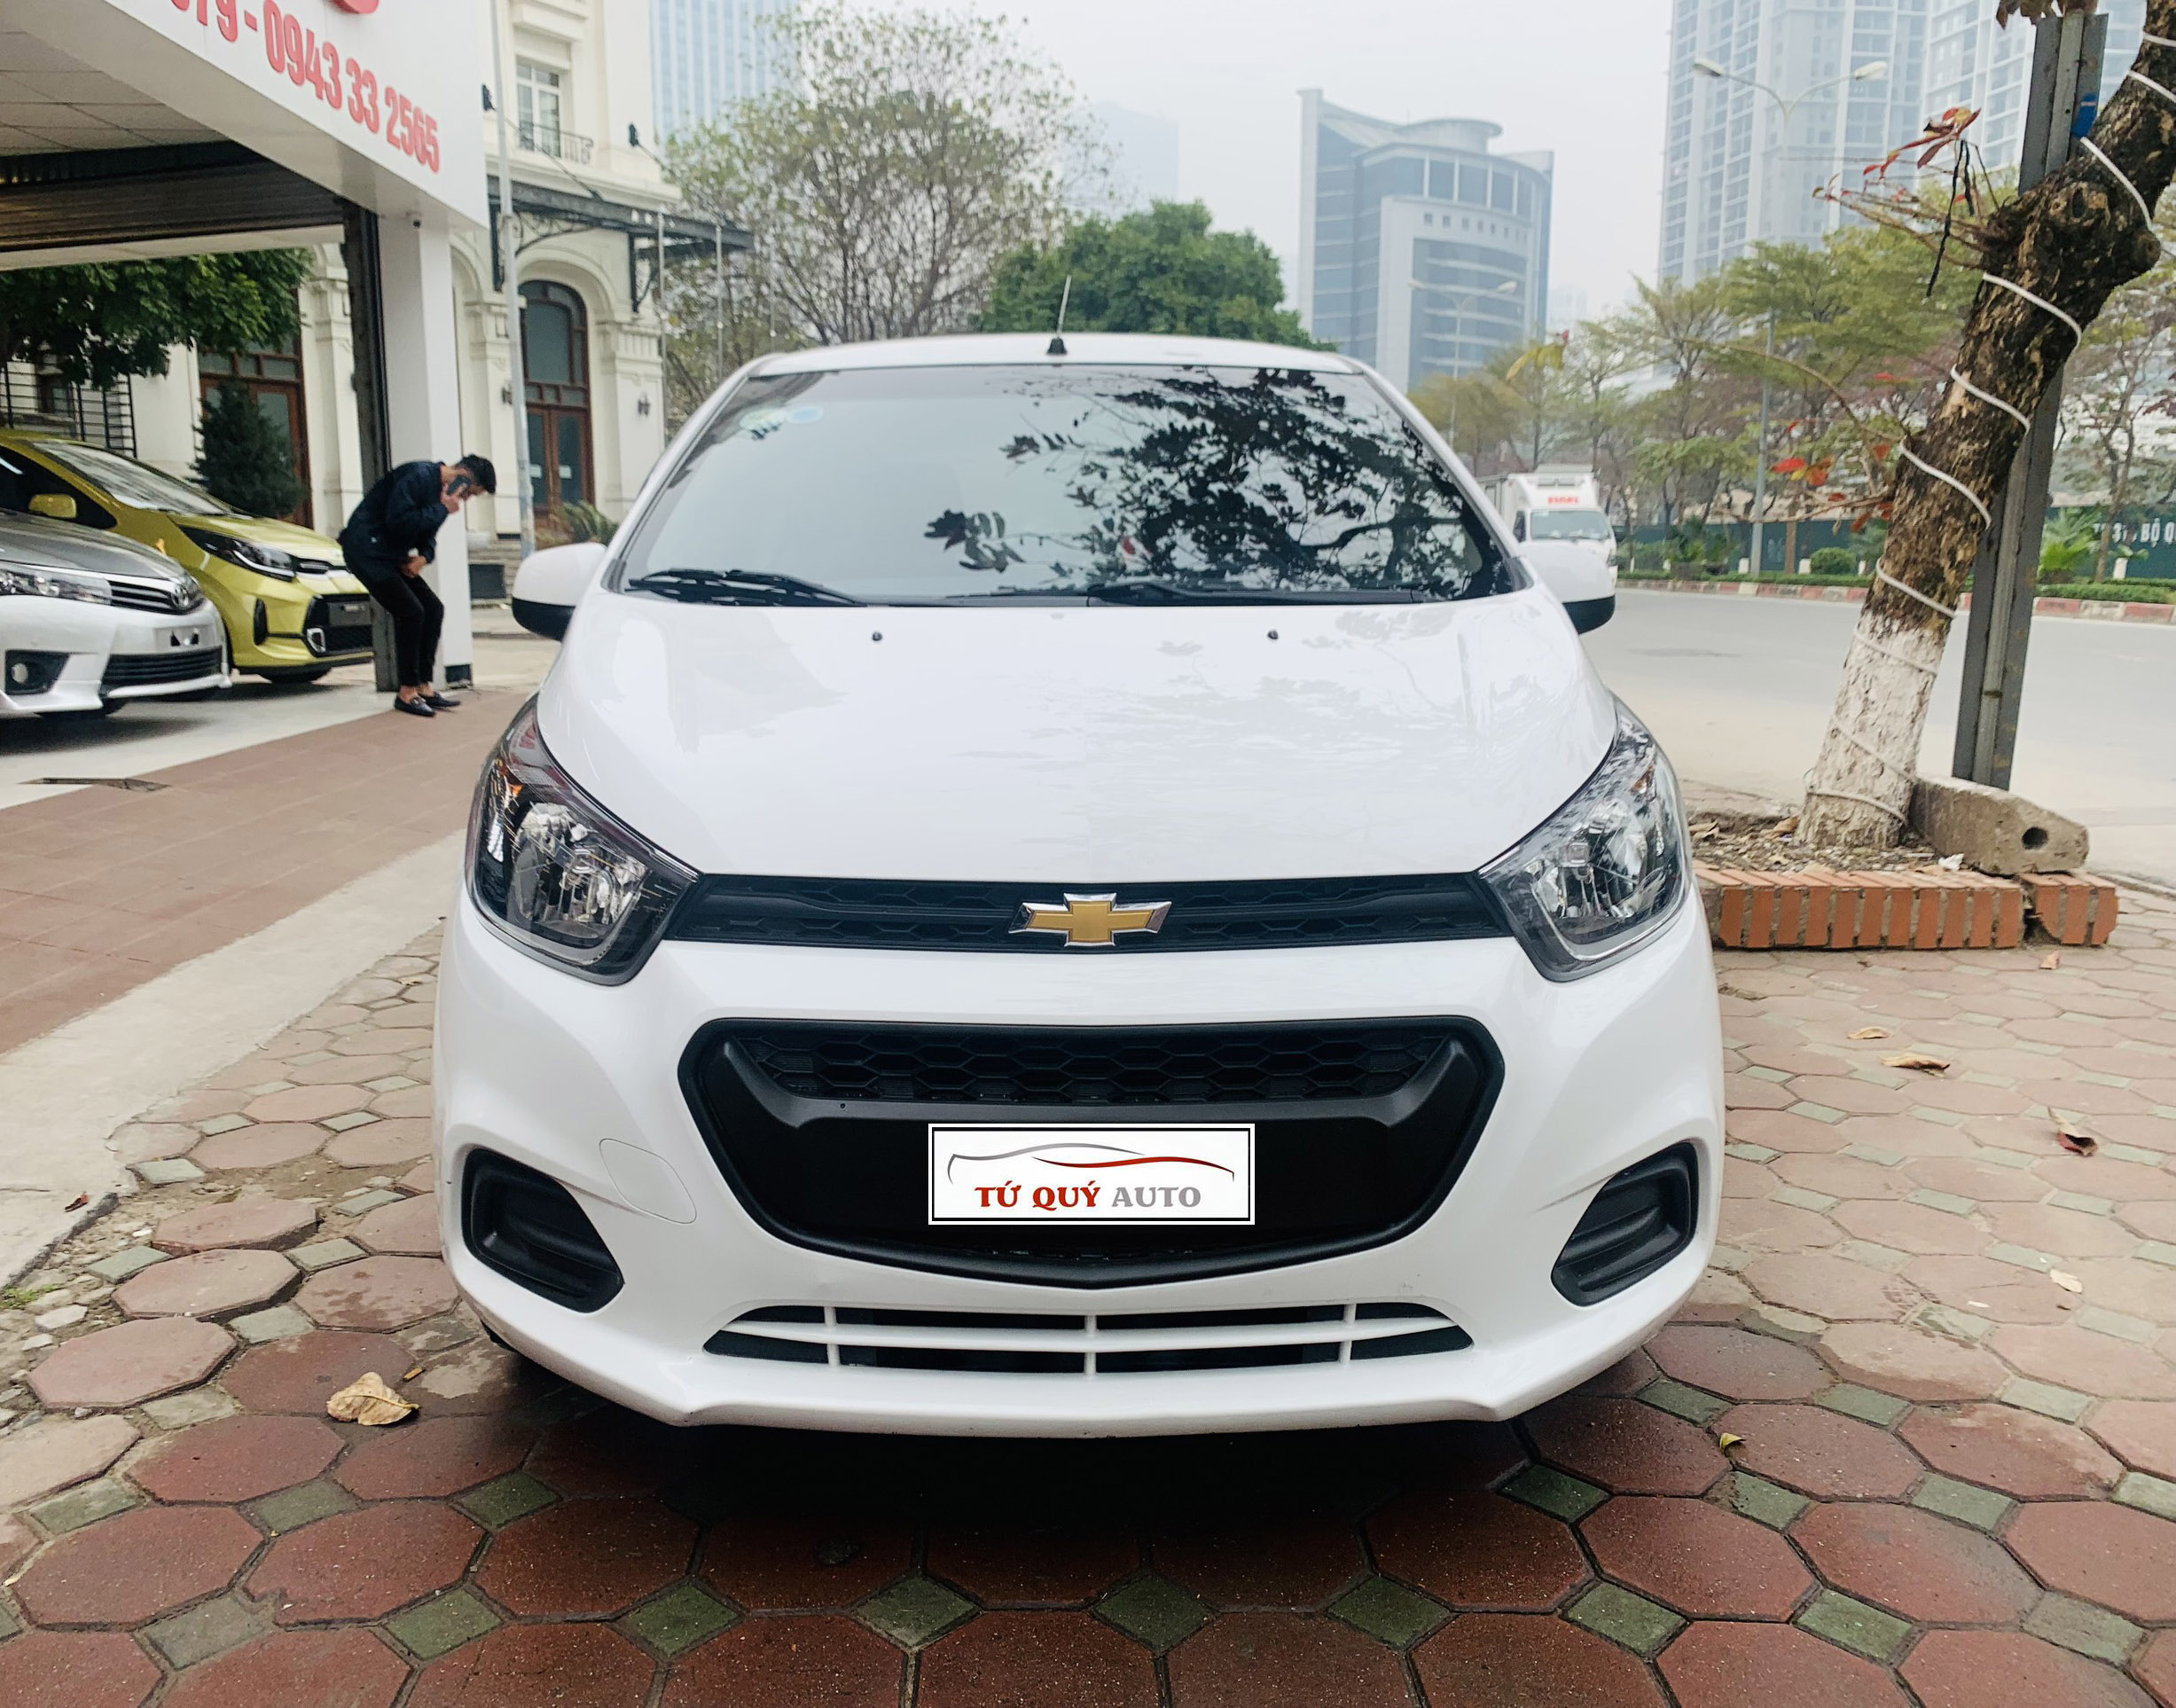 Mua bán xe Chevrolet Spark Van 2018 cũ  mới toàn quốc  Carmudi Việt Nam